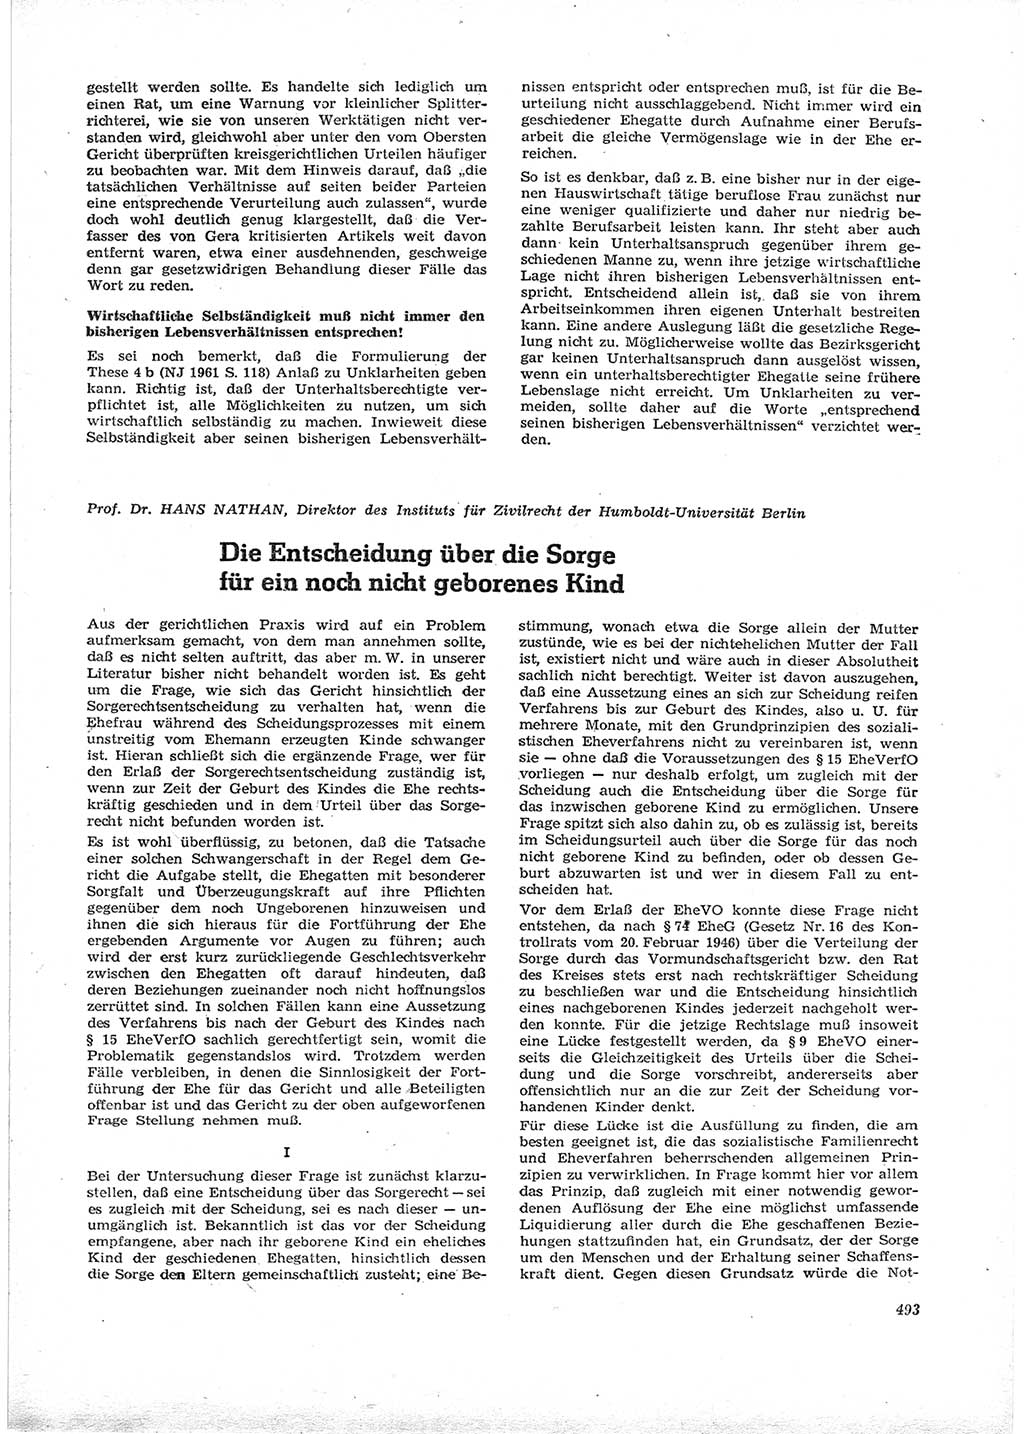 Neue Justiz (NJ), Zeitschrift für Recht und Rechtswissenschaft [Deutsche Demokratische Republik (DDR)], 16. Jahrgang 1962, Seite 493 (NJ DDR 1962, S. 493)